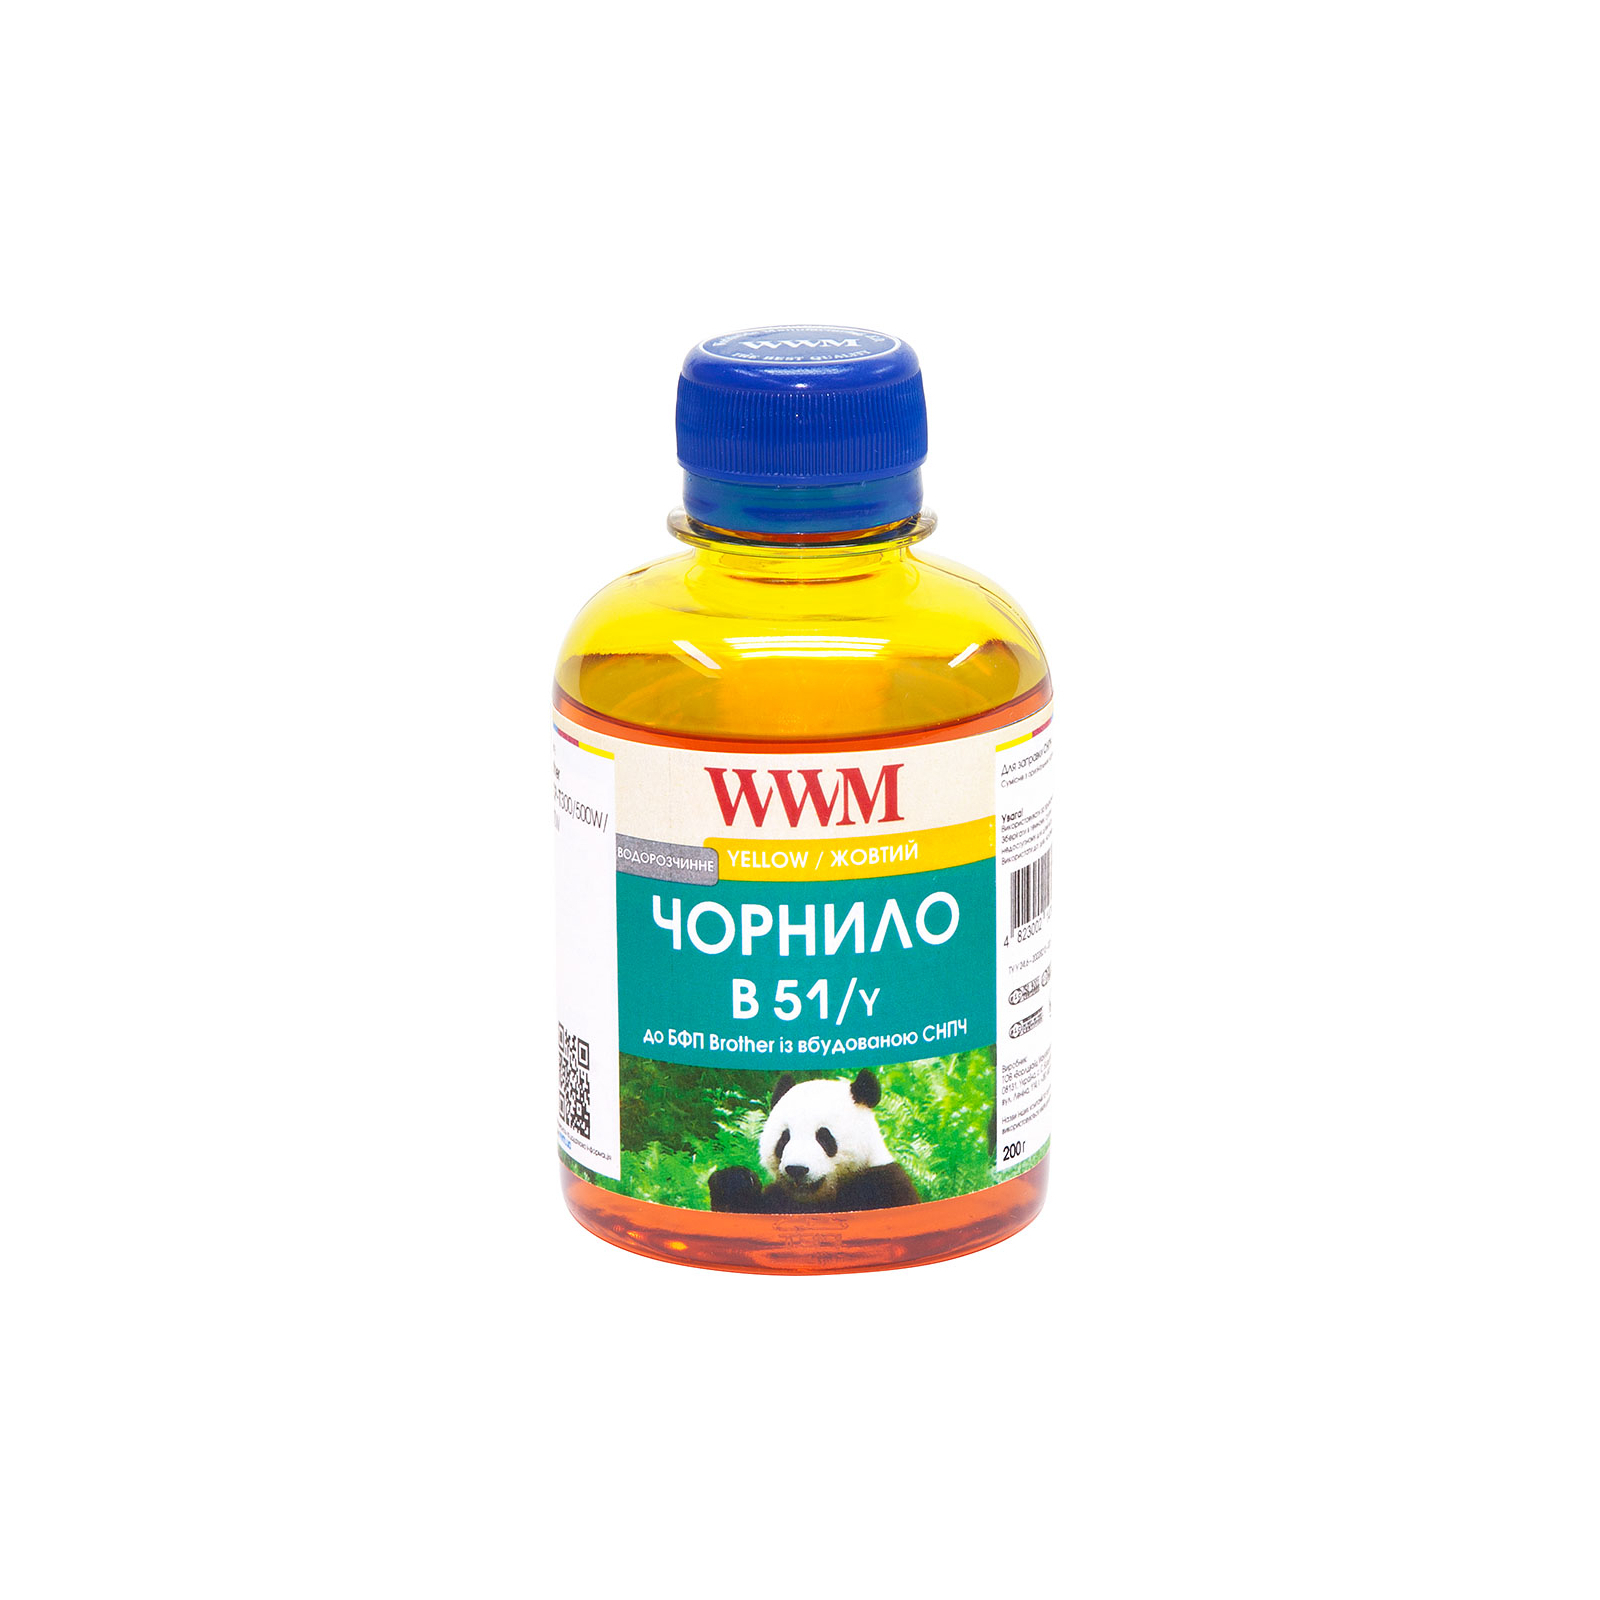 Чернила WWM Brother DCP-T300/T500W/T700W 200г Yellow Water-soluble (B51/Y)